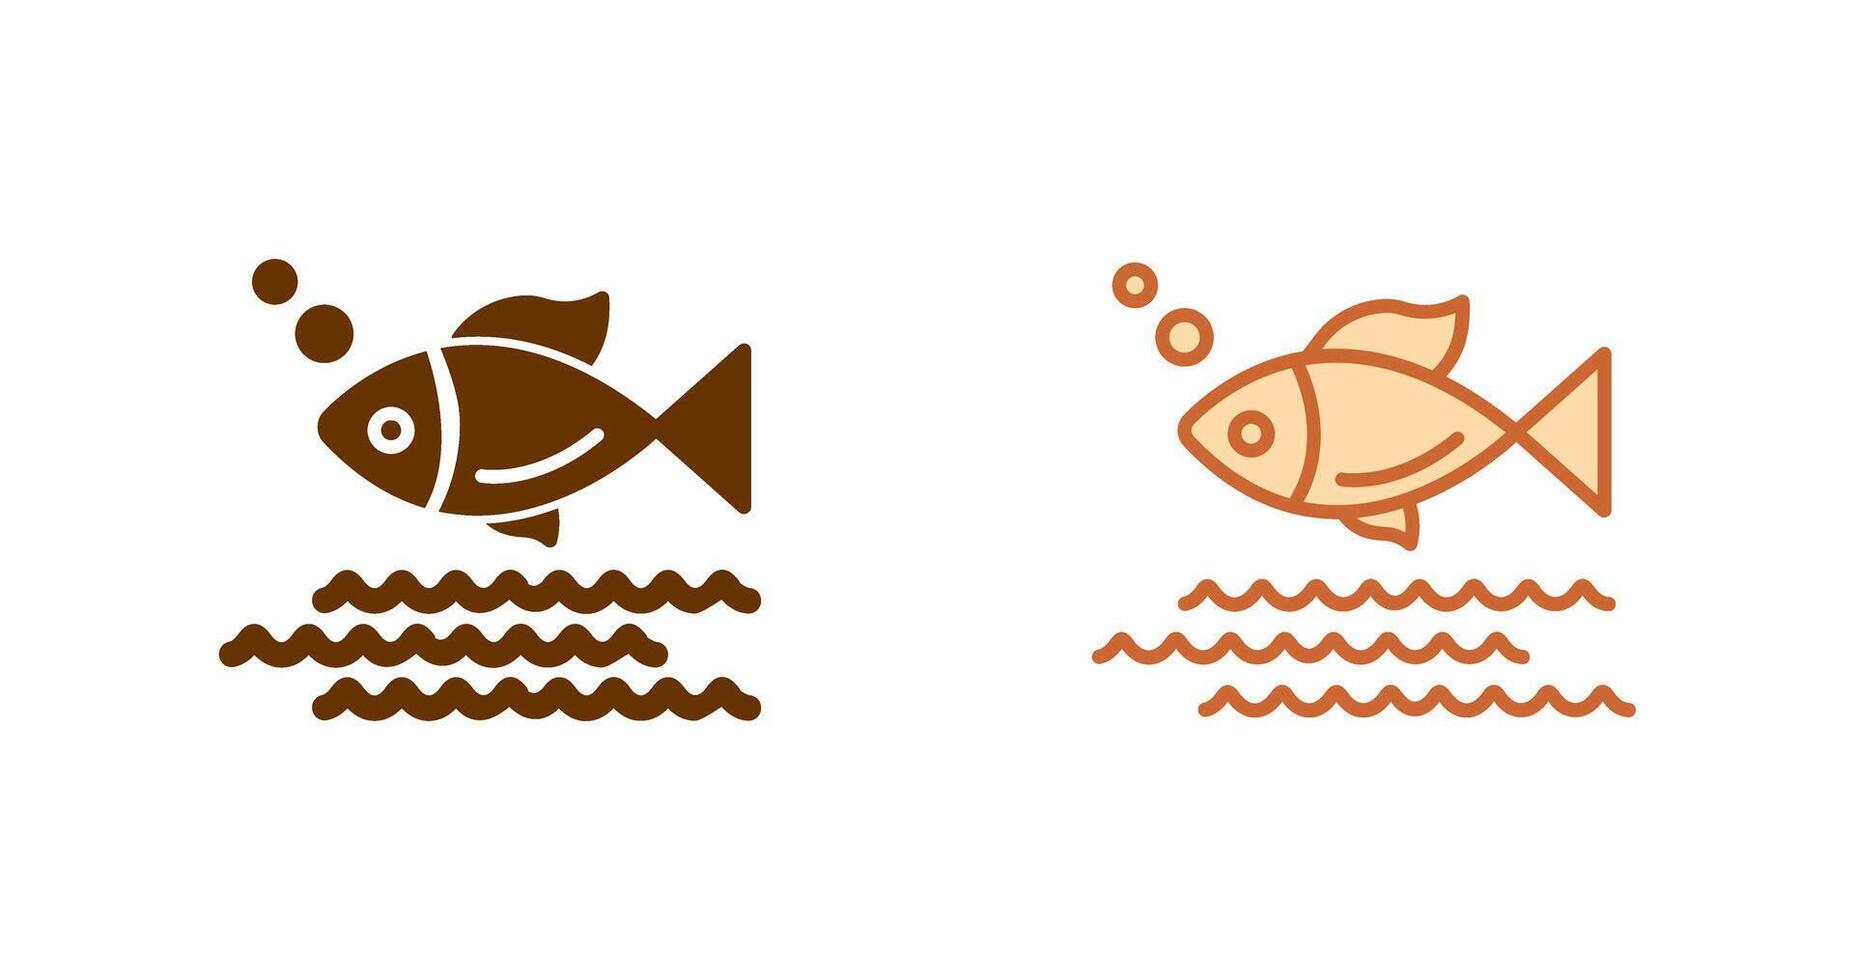 design de ícone de peixe vetor